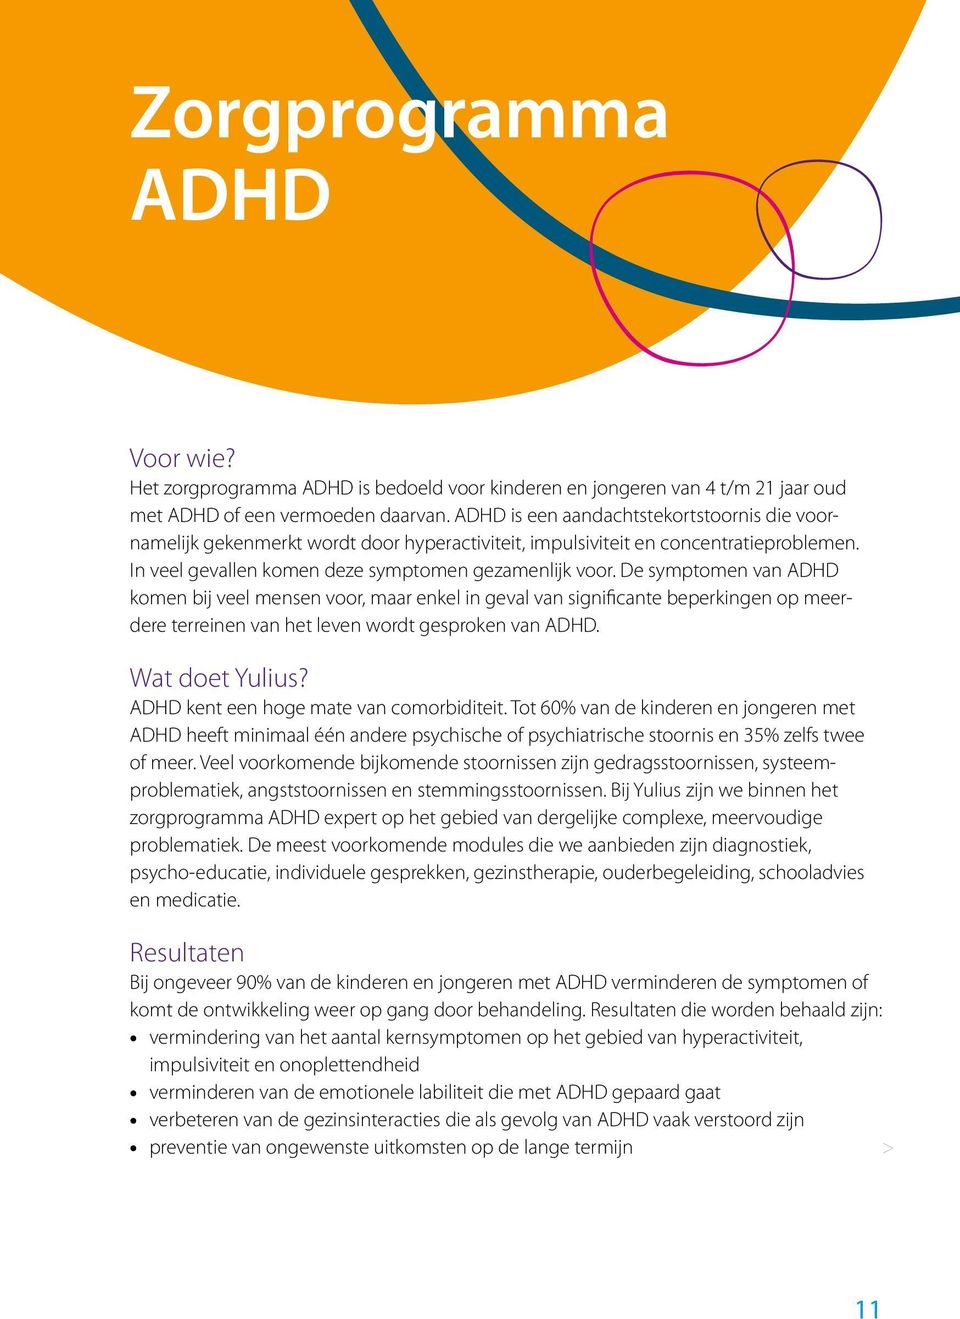 De symptomen van ADHD komen bij veel mensen voor, maar enkel in geval van significante beperkingen op meerdere terreinen van het leven wordt gesproken van ADHD. Wat doet Yulius?